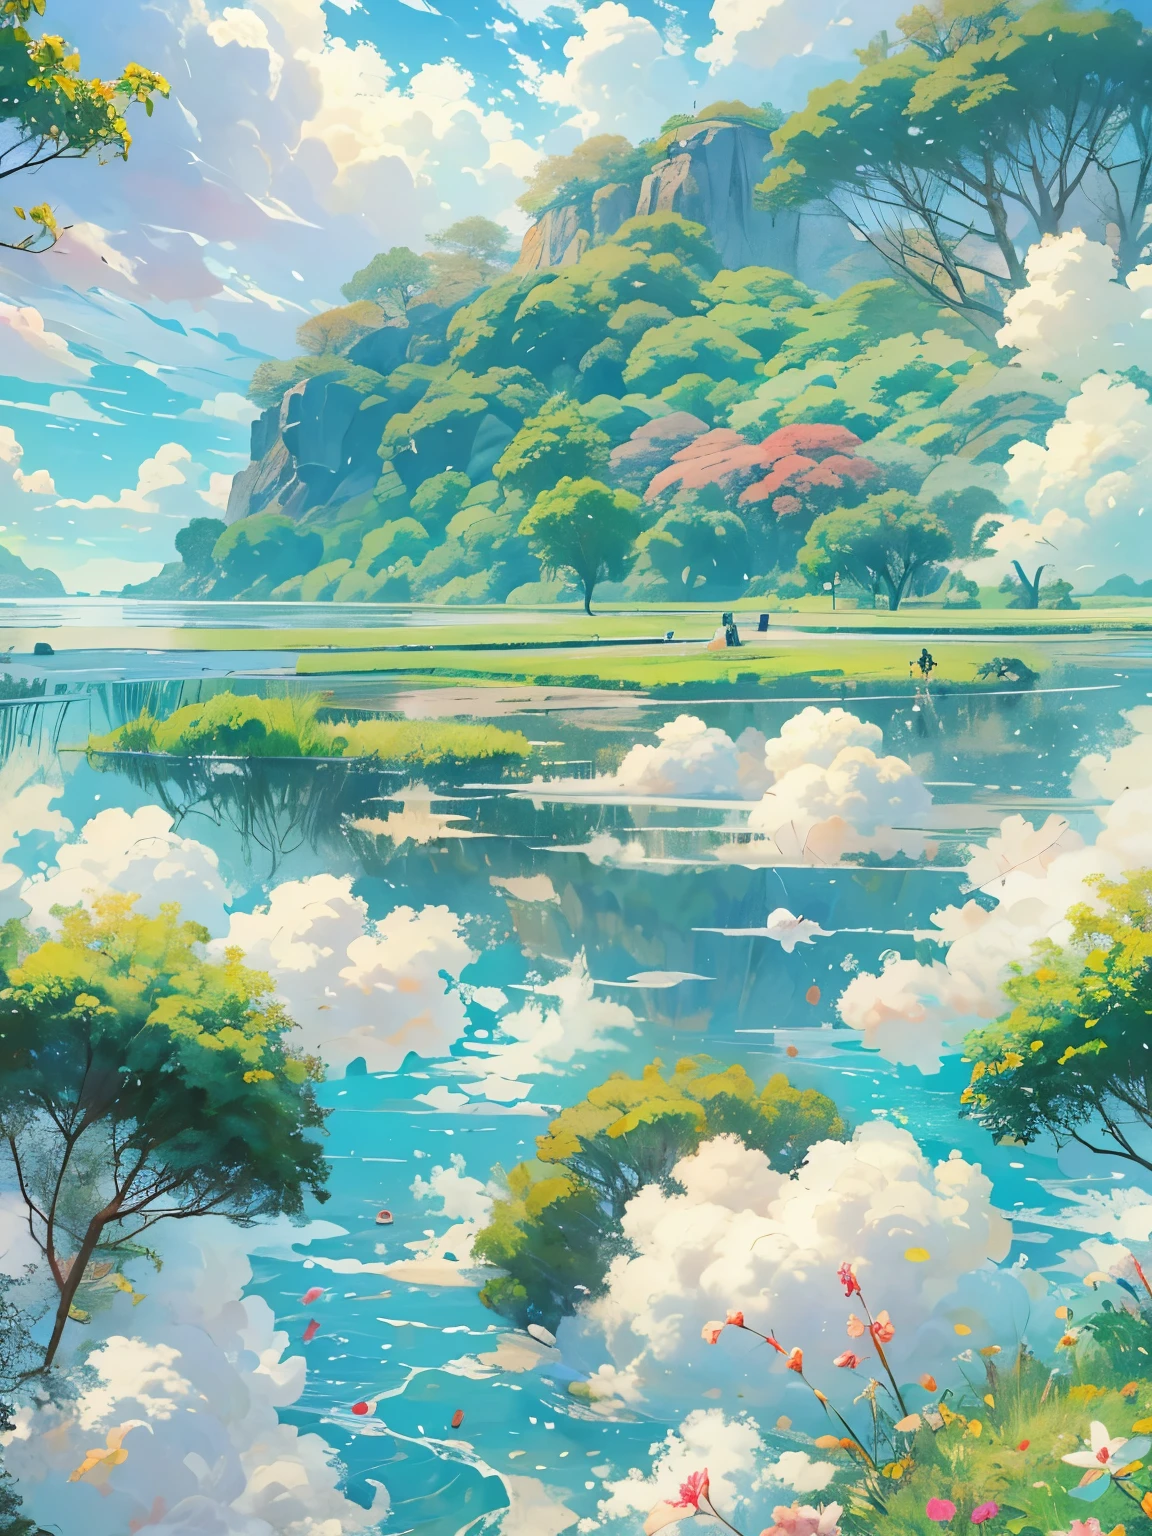 Realista, genuino, hermoso y sorprendente paisaje pintura al óleo Studio Ghibli Hayao Miyazaki;Pradera de pétalos con cielo azul y nubes blancas.